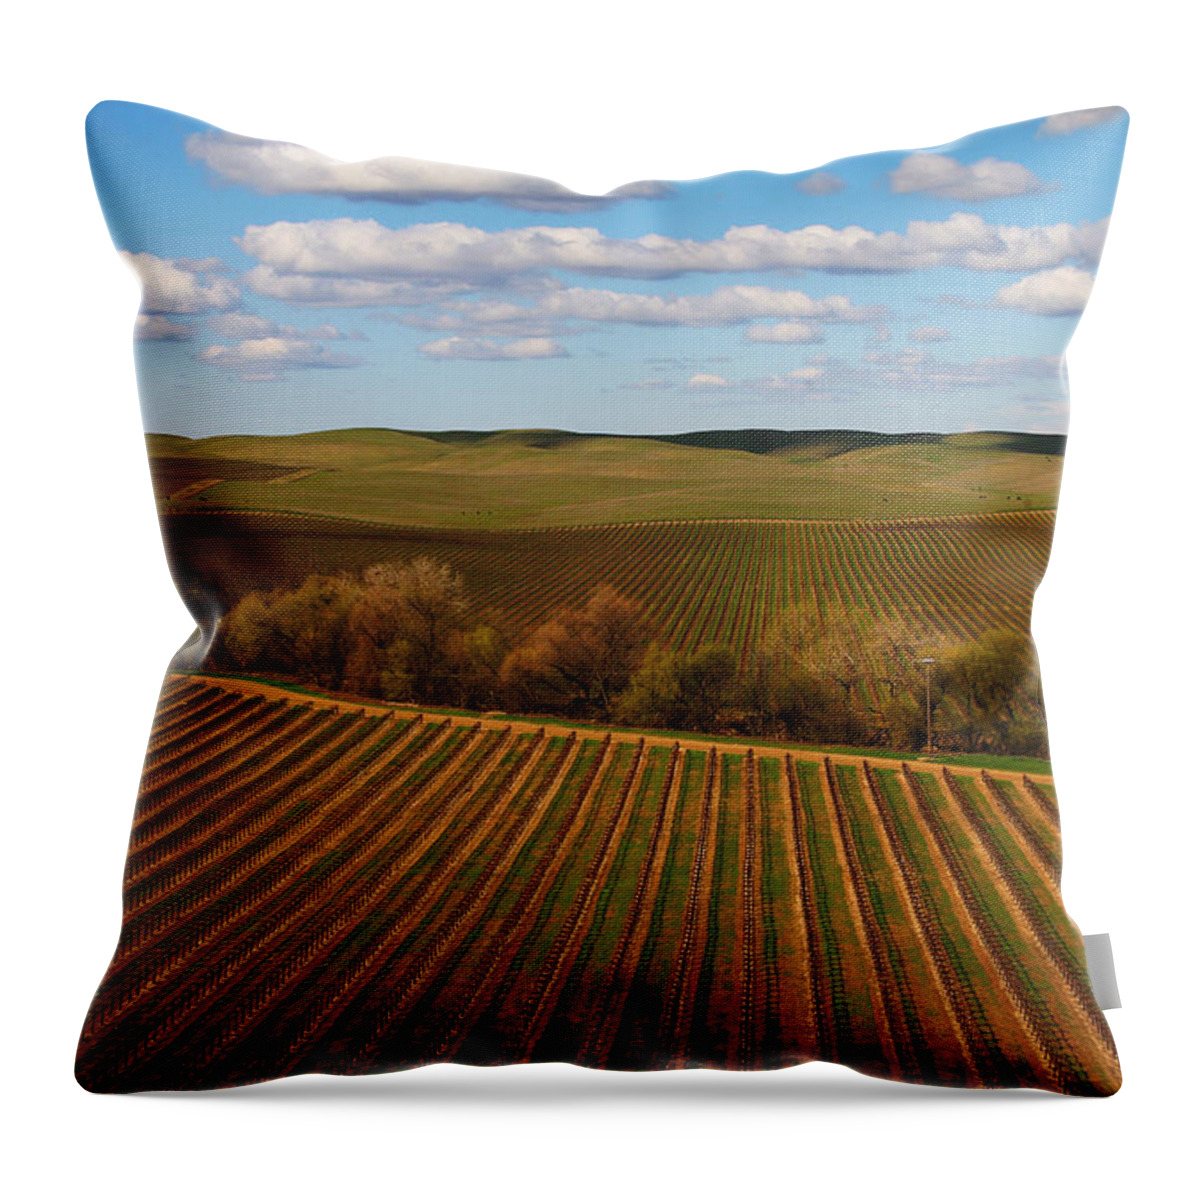 Vineyard Throw Pillow featuring the photograph Dunnigan Hills Vineyard by Robert Woodward